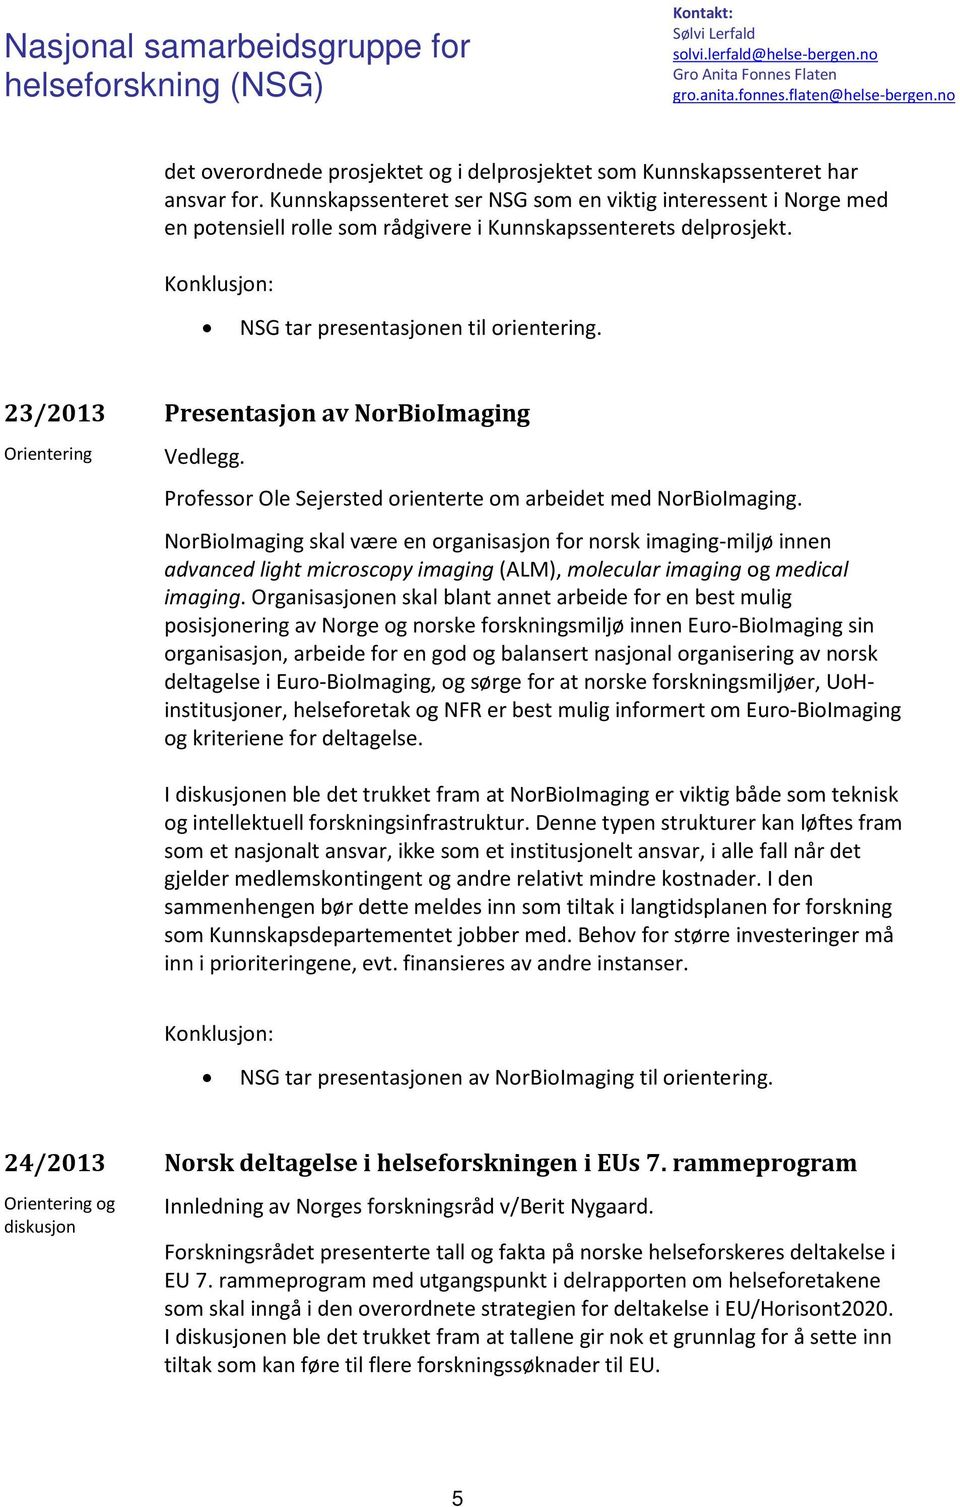 23/2013 Presentasjon av NorBioImaging Vedlegg. Professor Ole Sejersted orienterte om arbeidet med NorBioImaging.